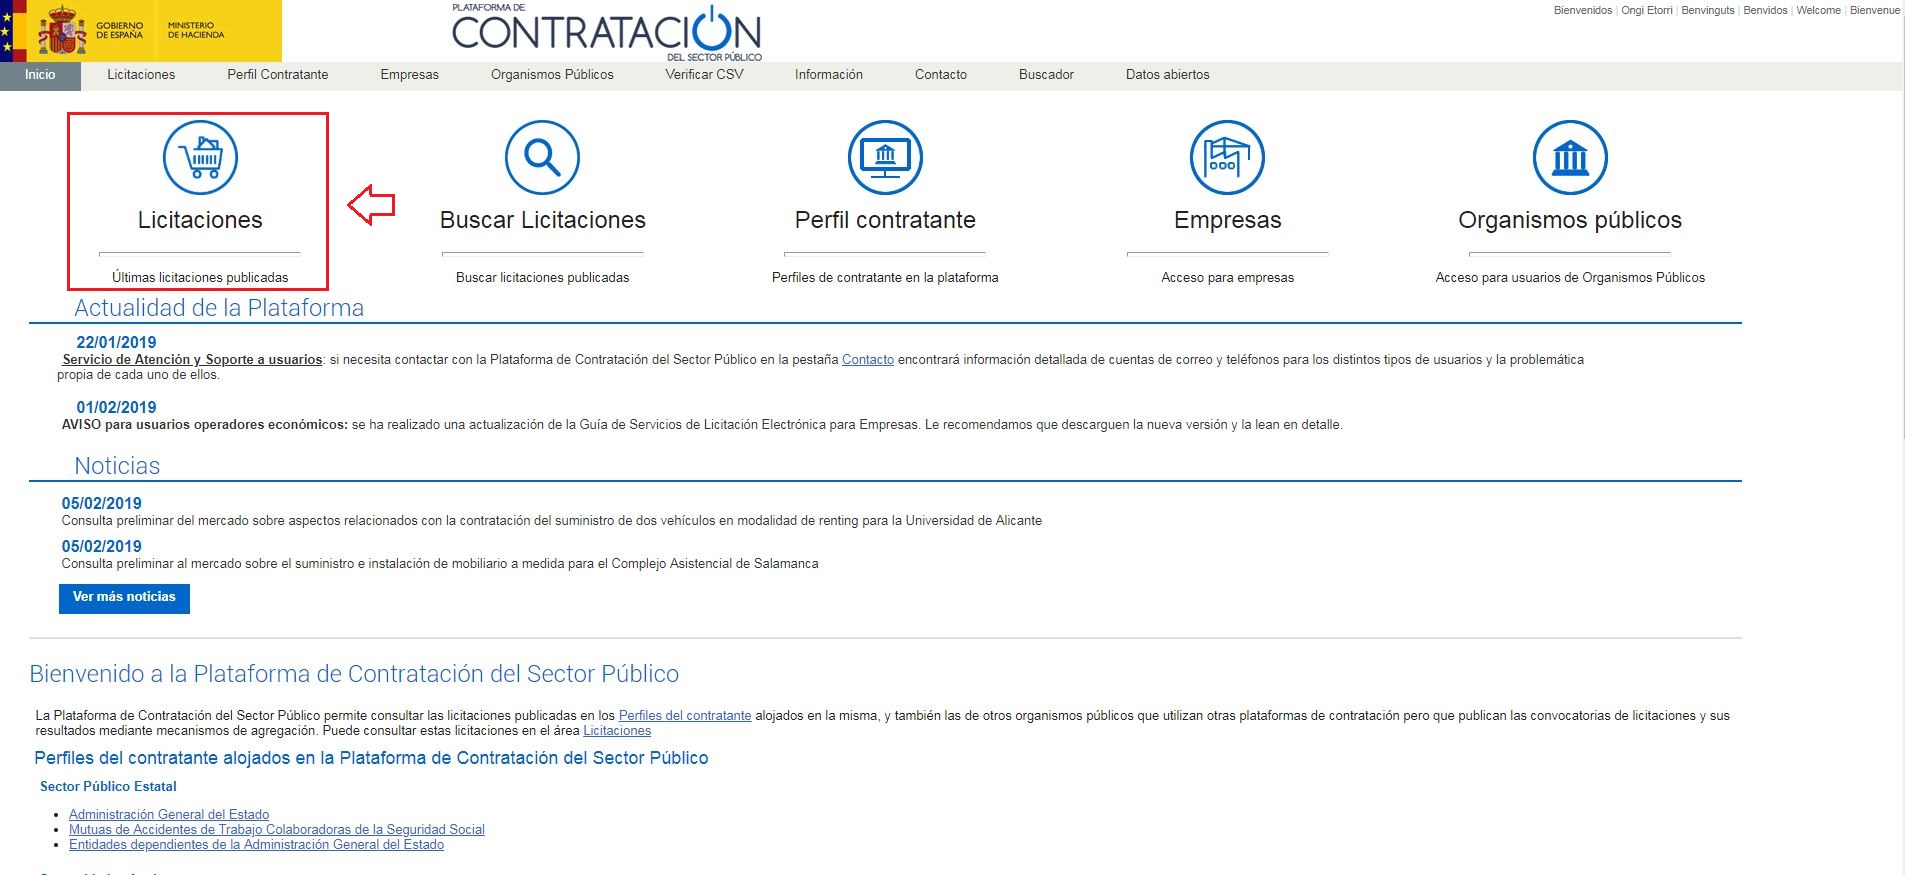 Captura de pantalla de la Plataforma de Contractació amb l’opció 'Licitacions' seleccionada